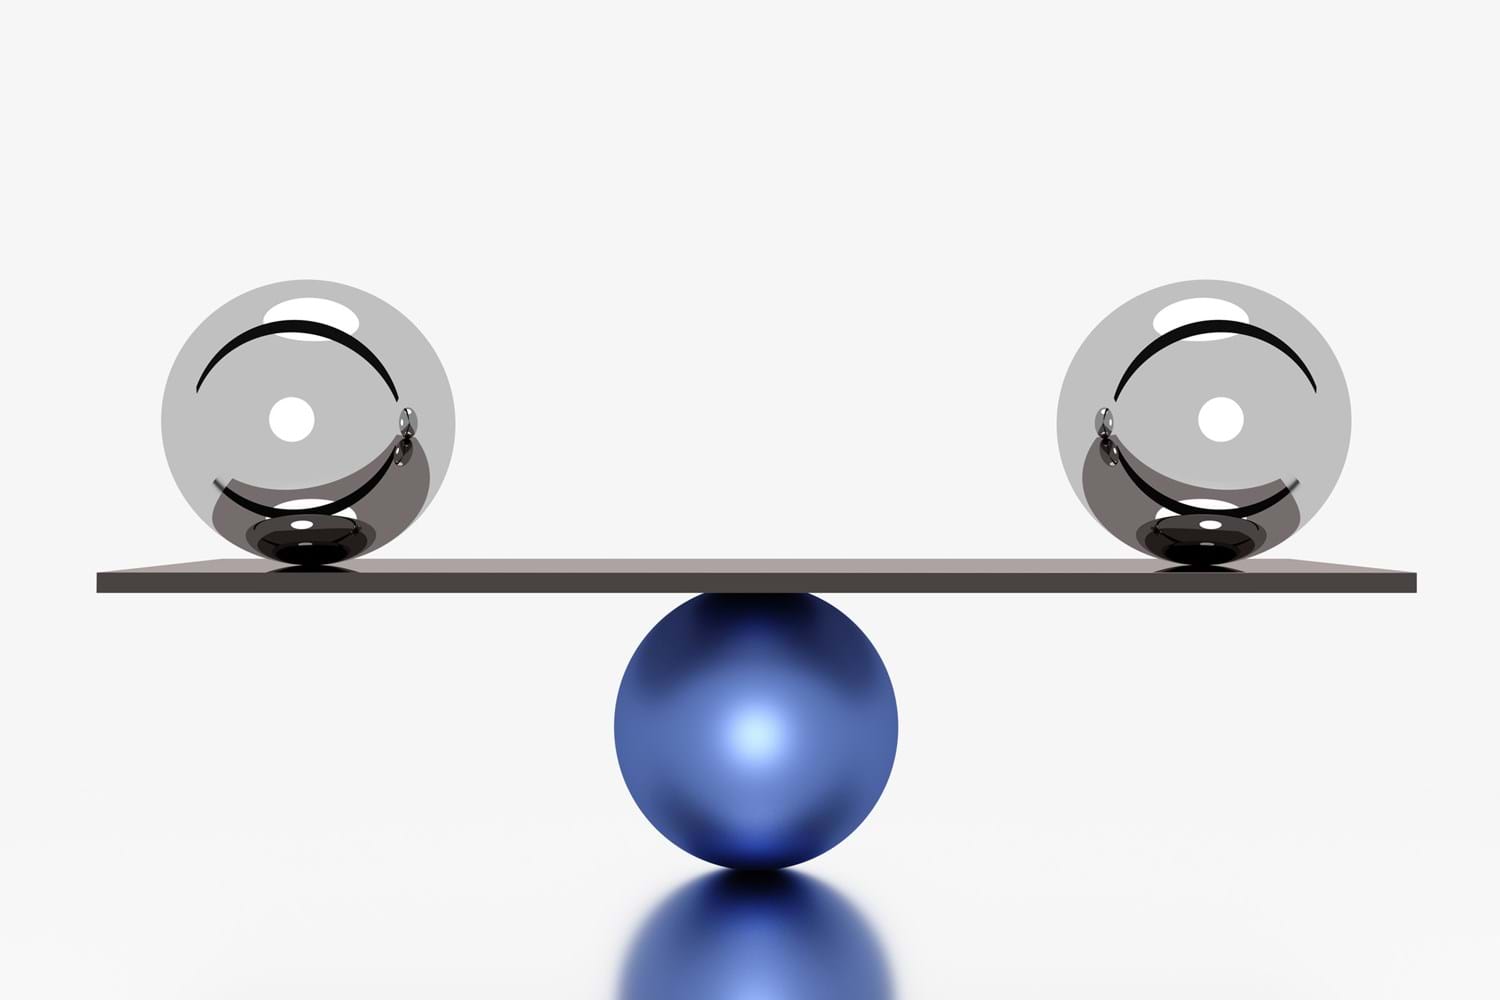 Zwei silberne Kugeln sind im Gleichgewicht auf einem Brett, das auf einer blauen Kugel gelagert ist.